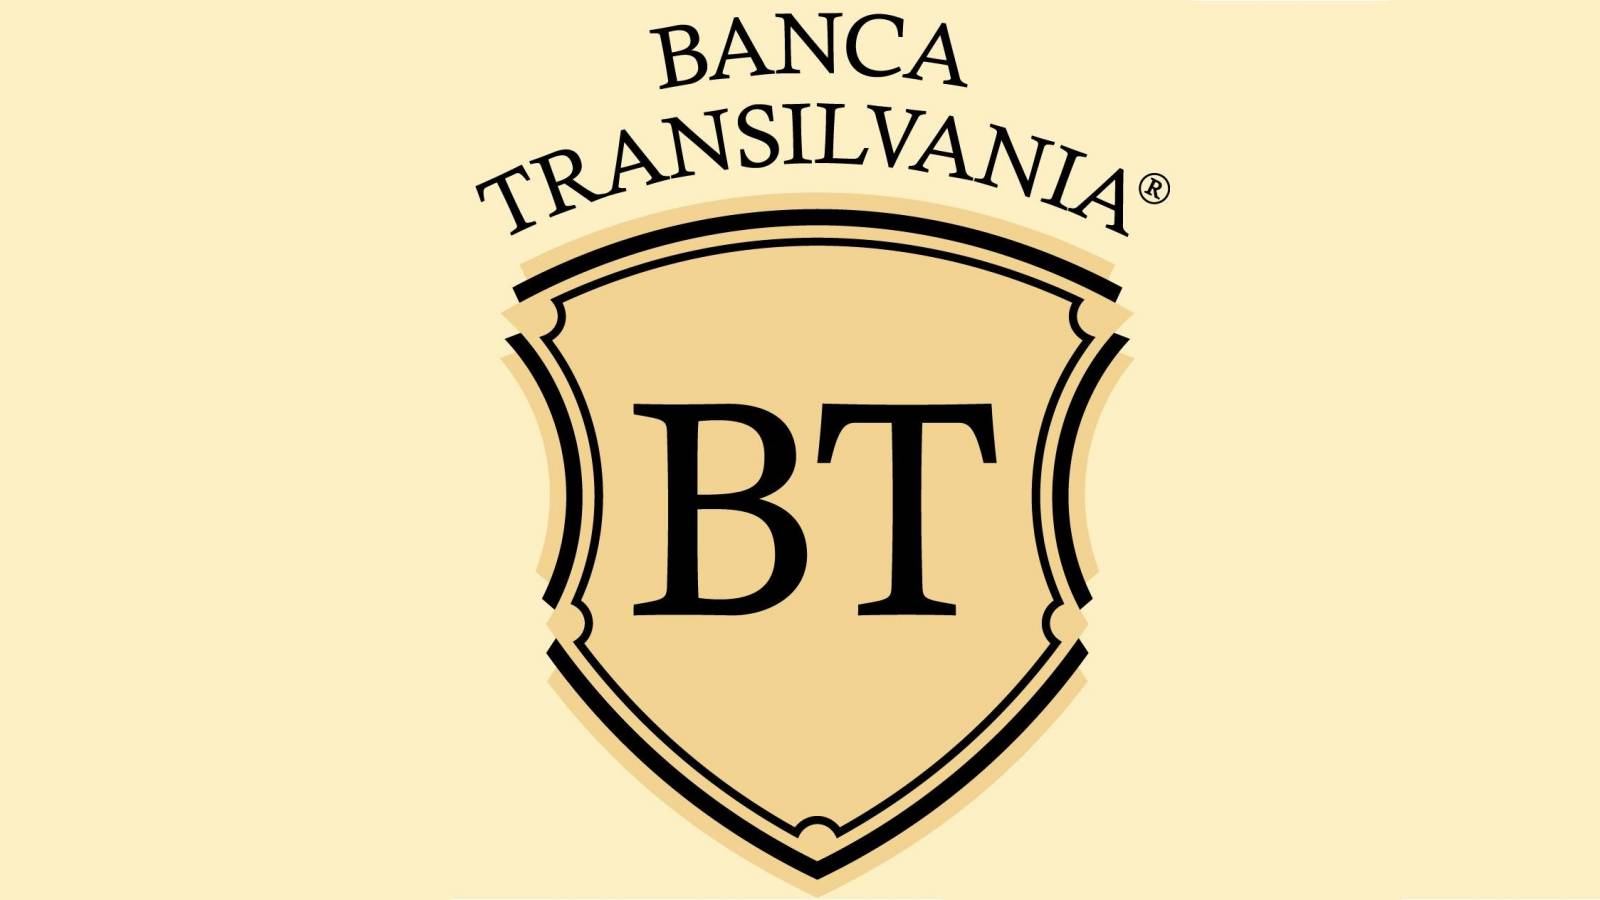 BANCA Transilvania Ce Ofera Unic Romania Exclusiv Clienti